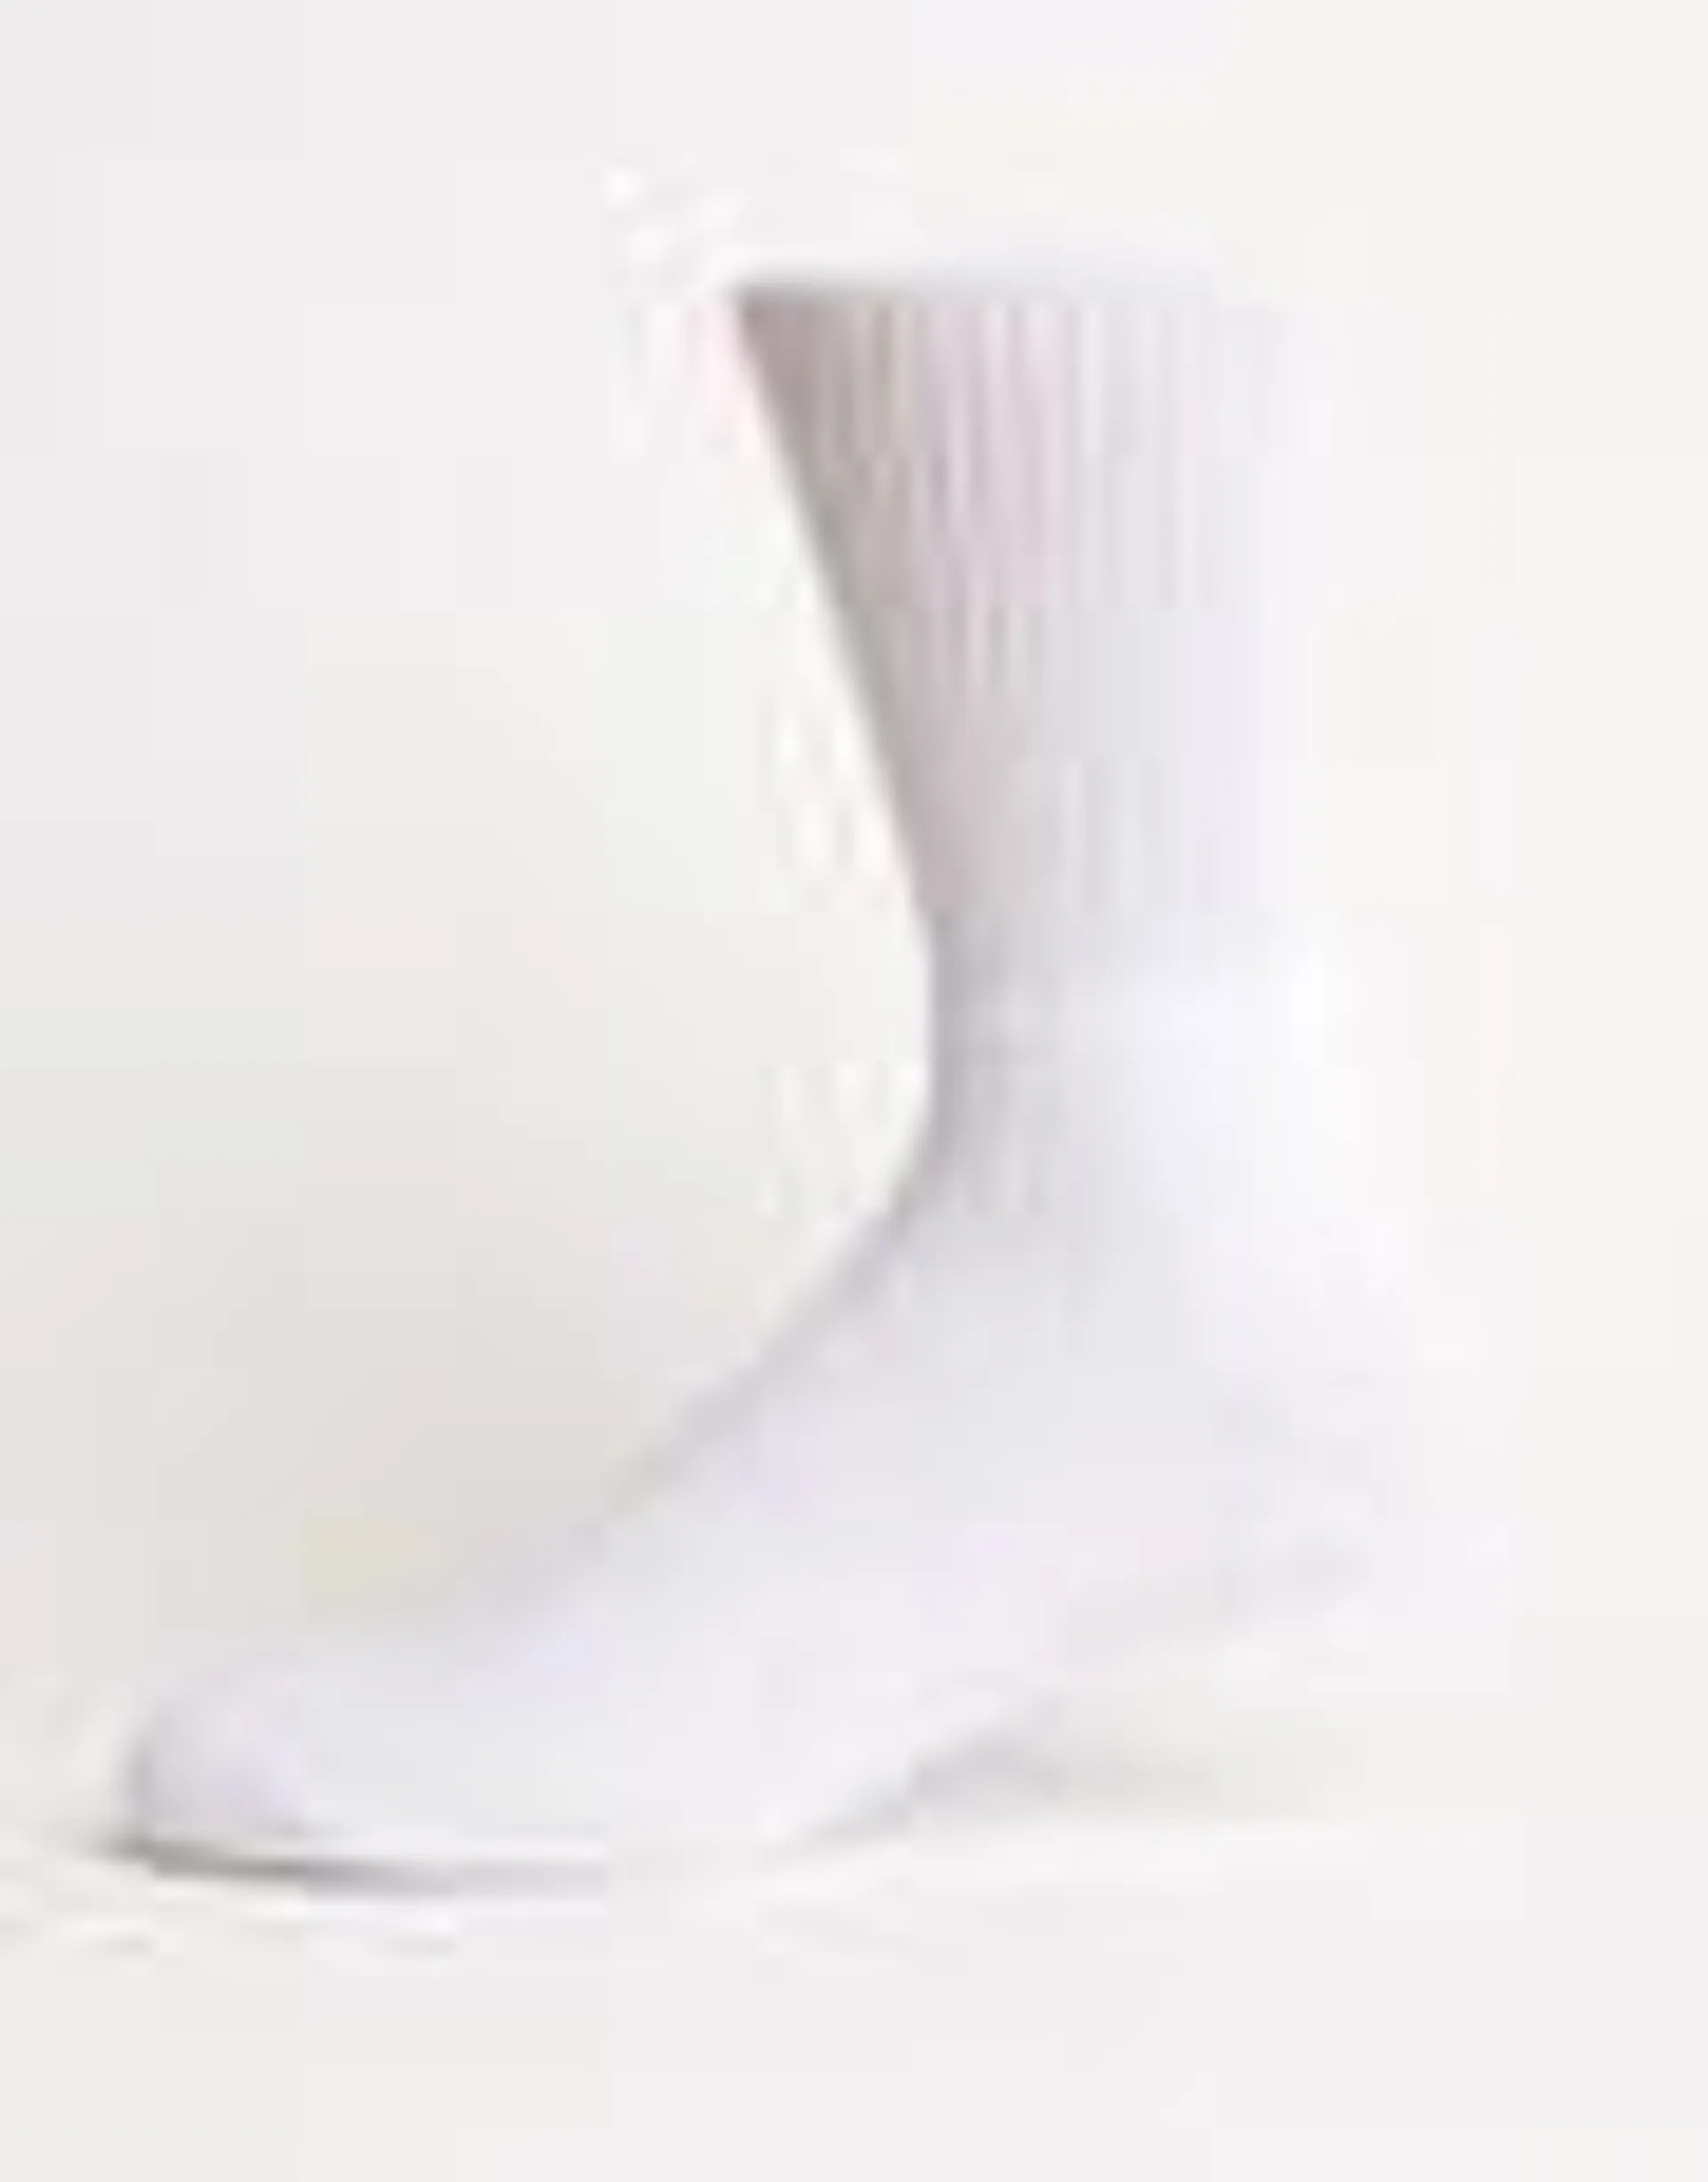 Plain Sport Socks in White